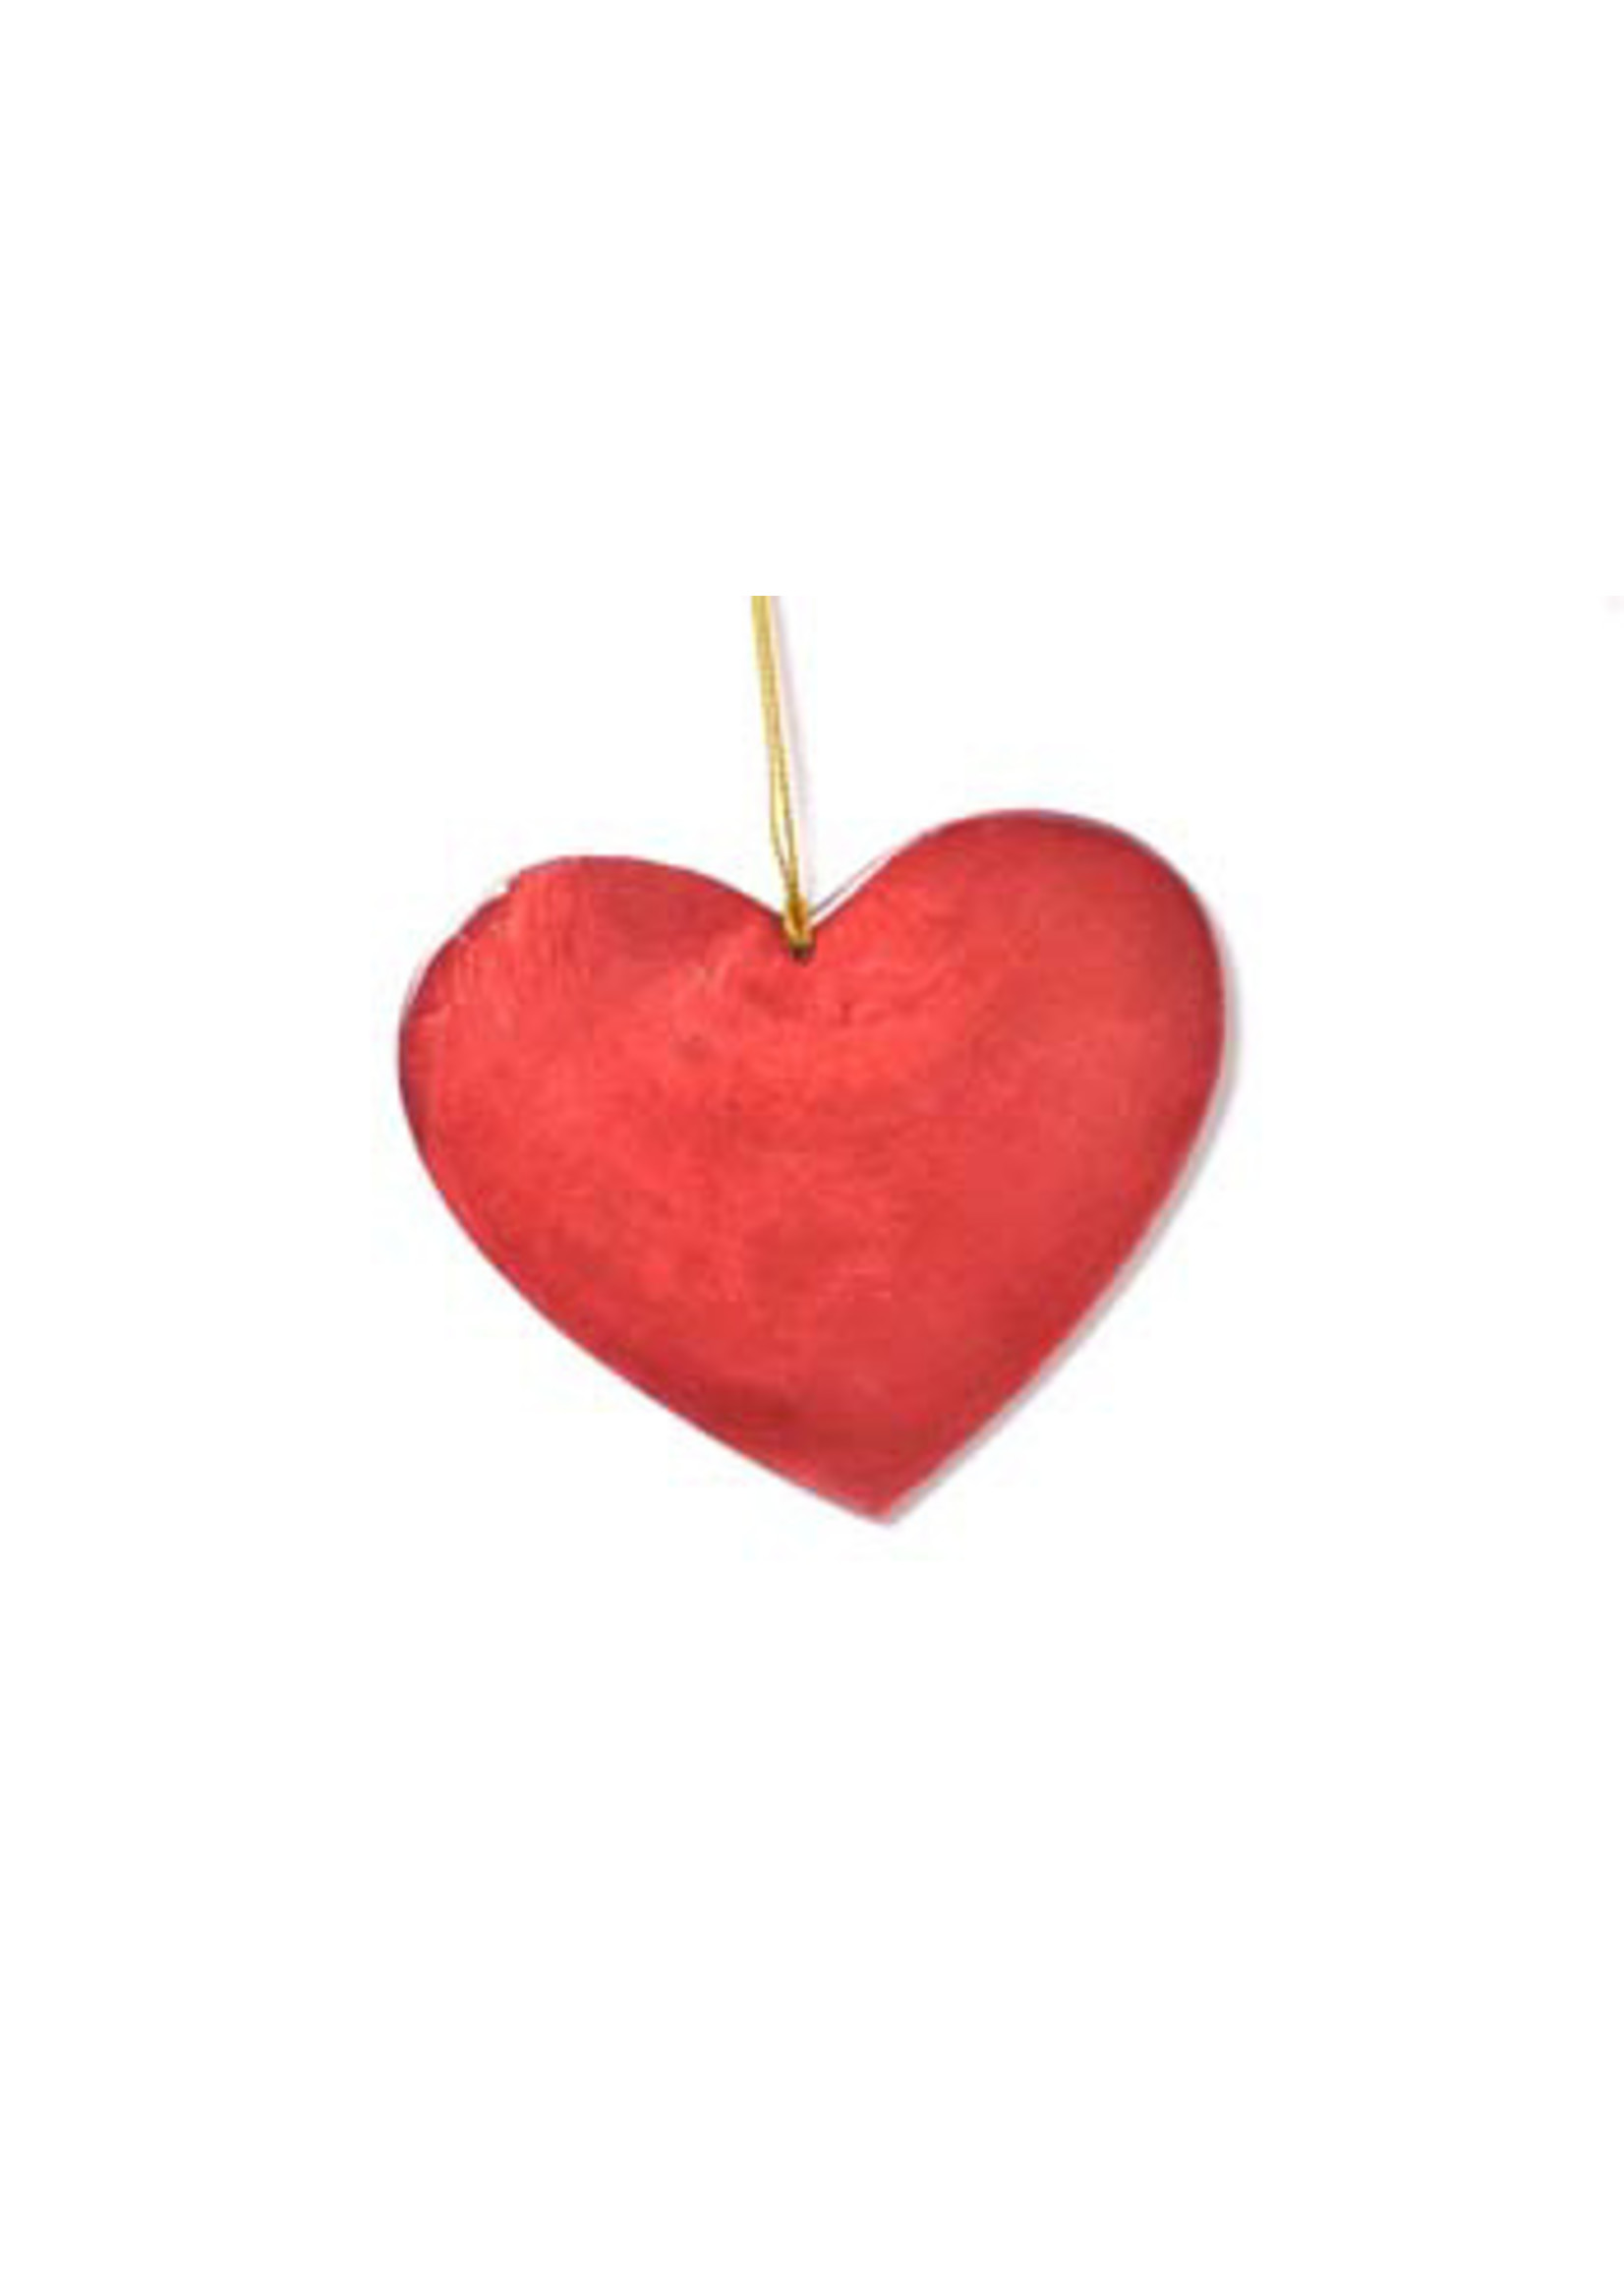 Kinta Kerstboomhanger hart 9cm rood capiz